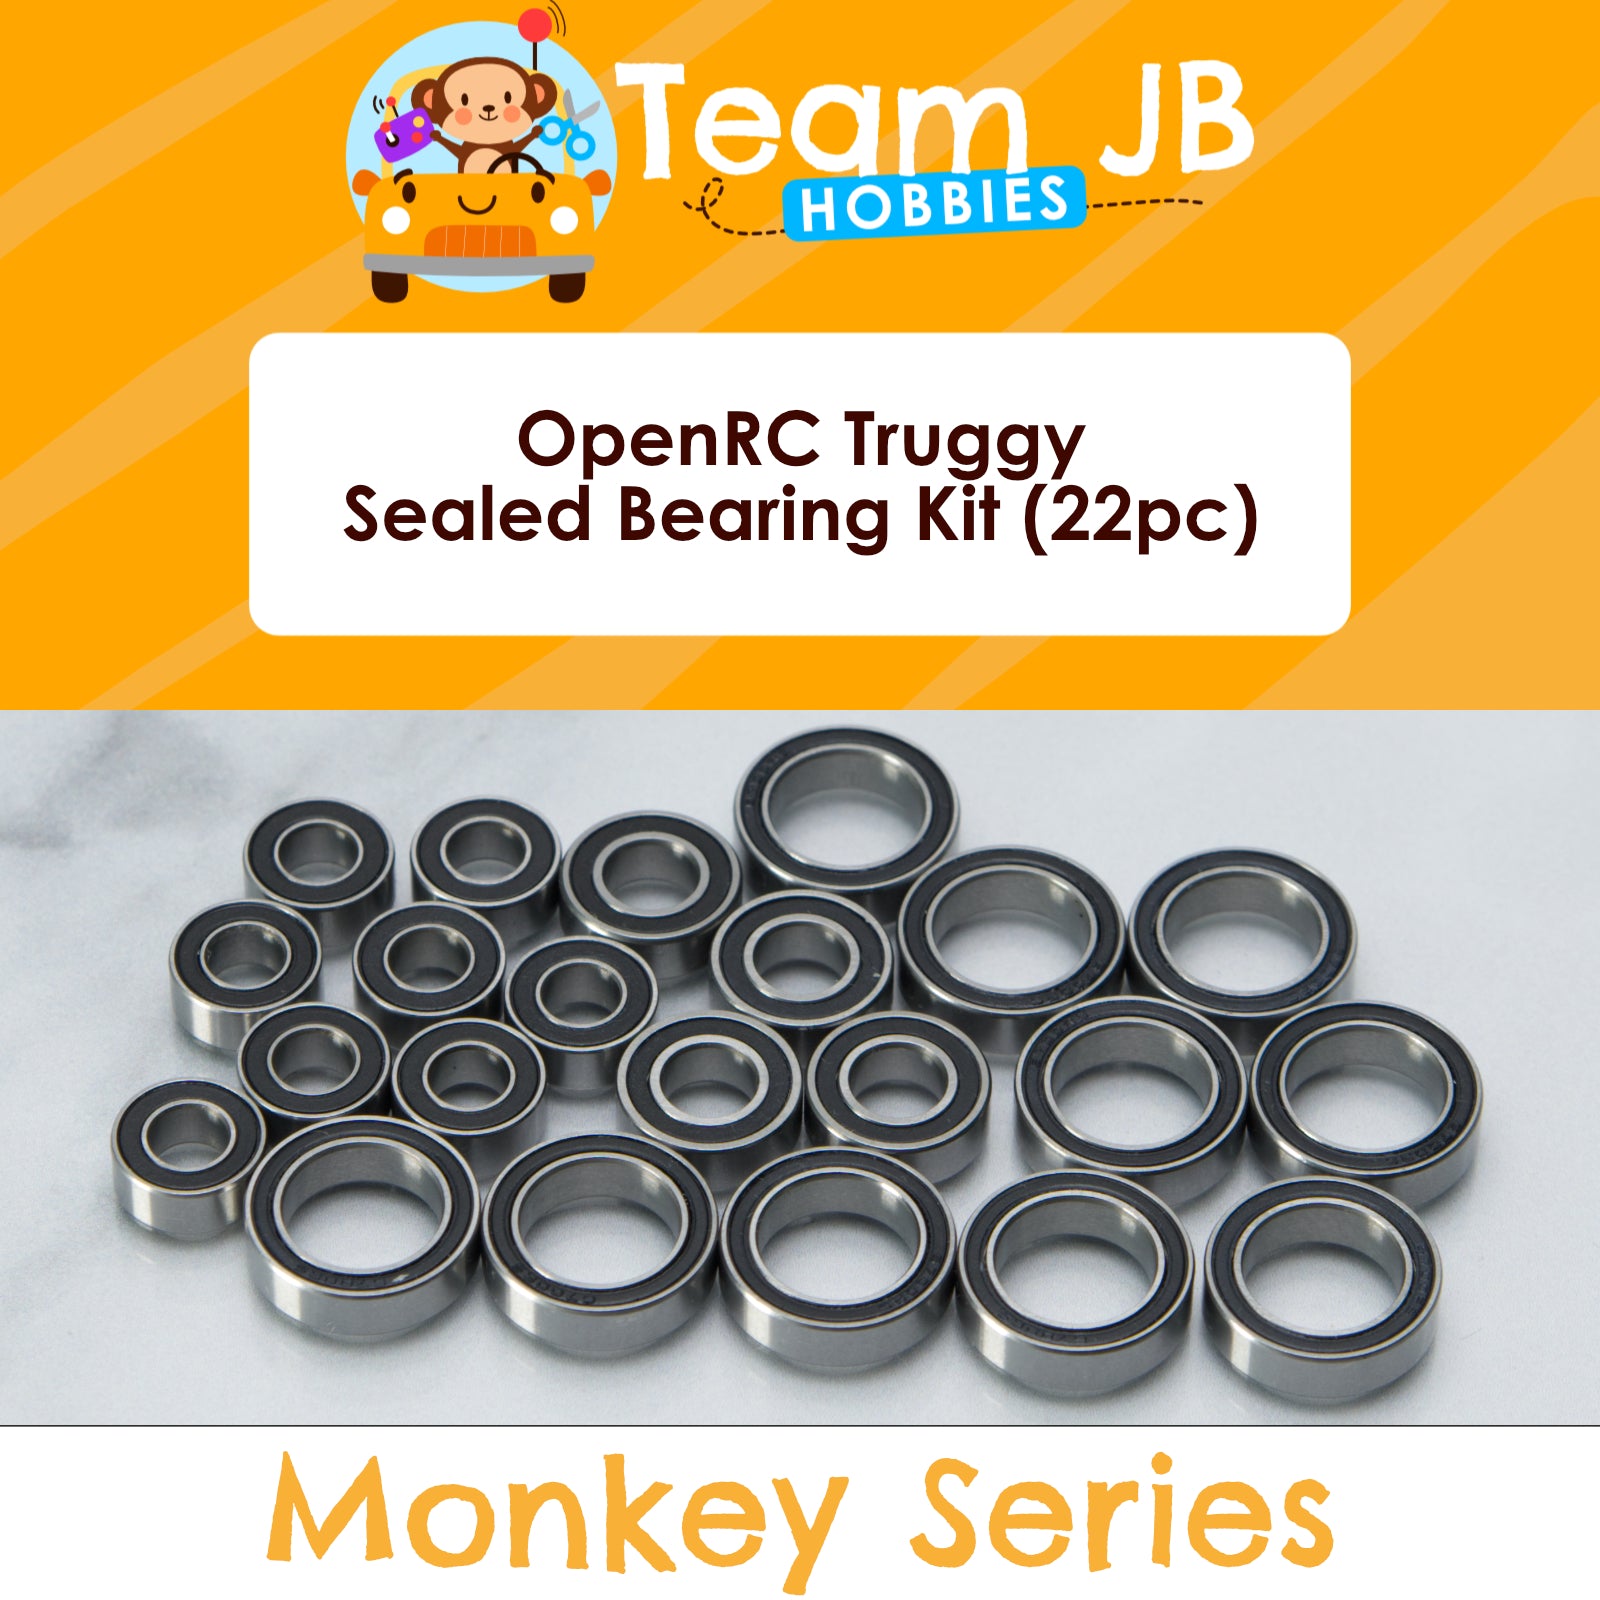 OpenRC Truggy - Sealed Bearing Kit